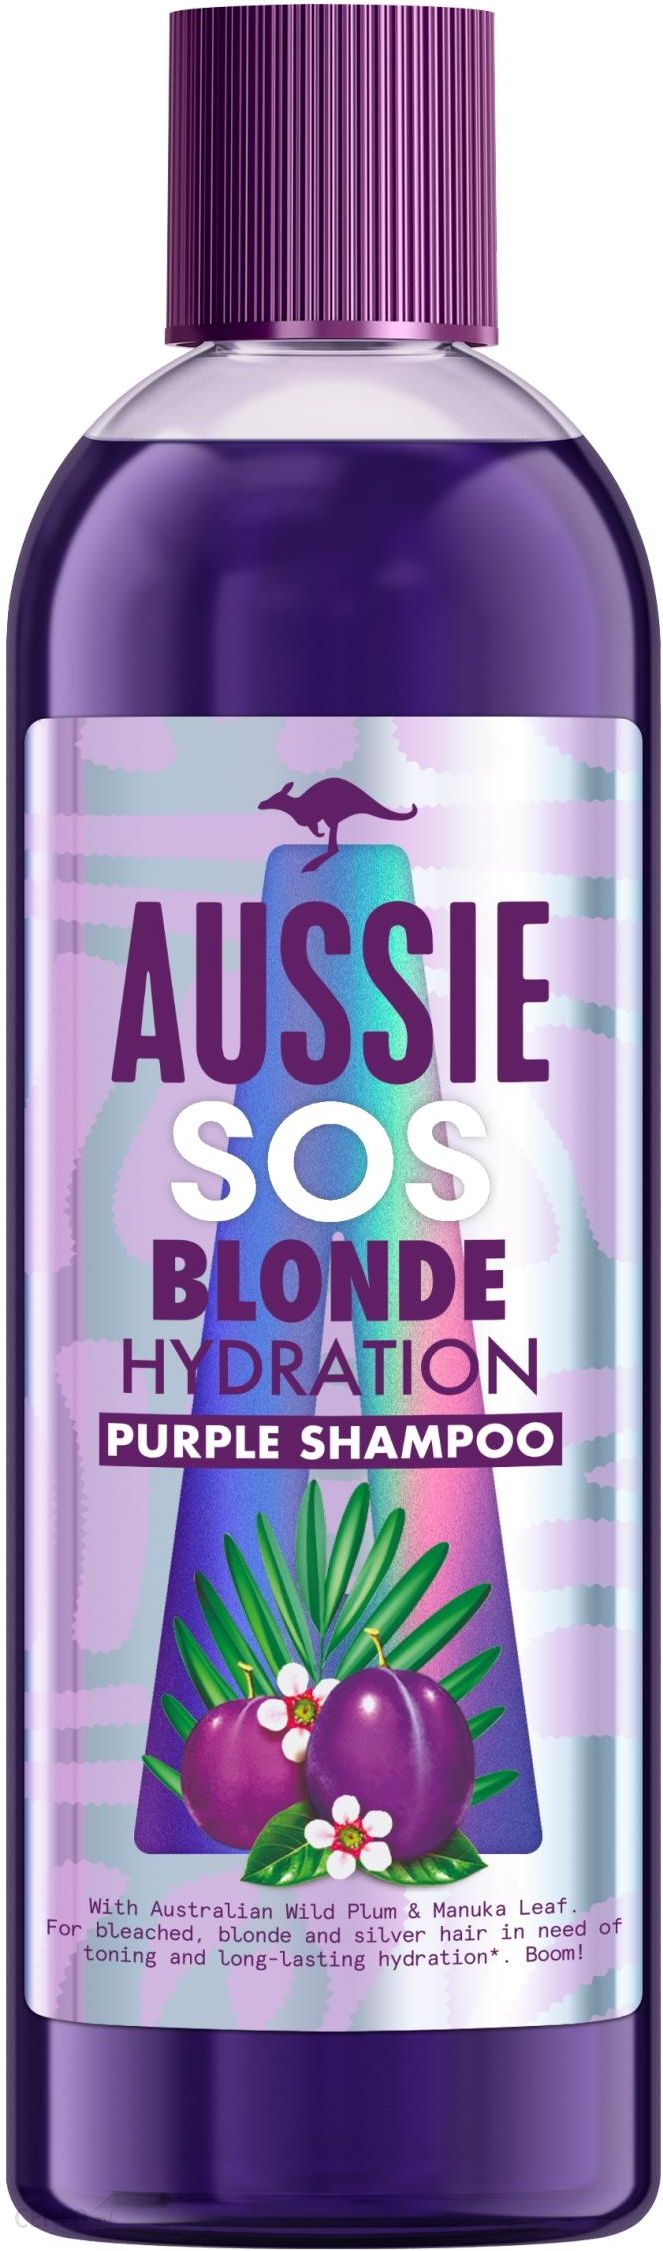 szampon do włosów aussie reklama 2018